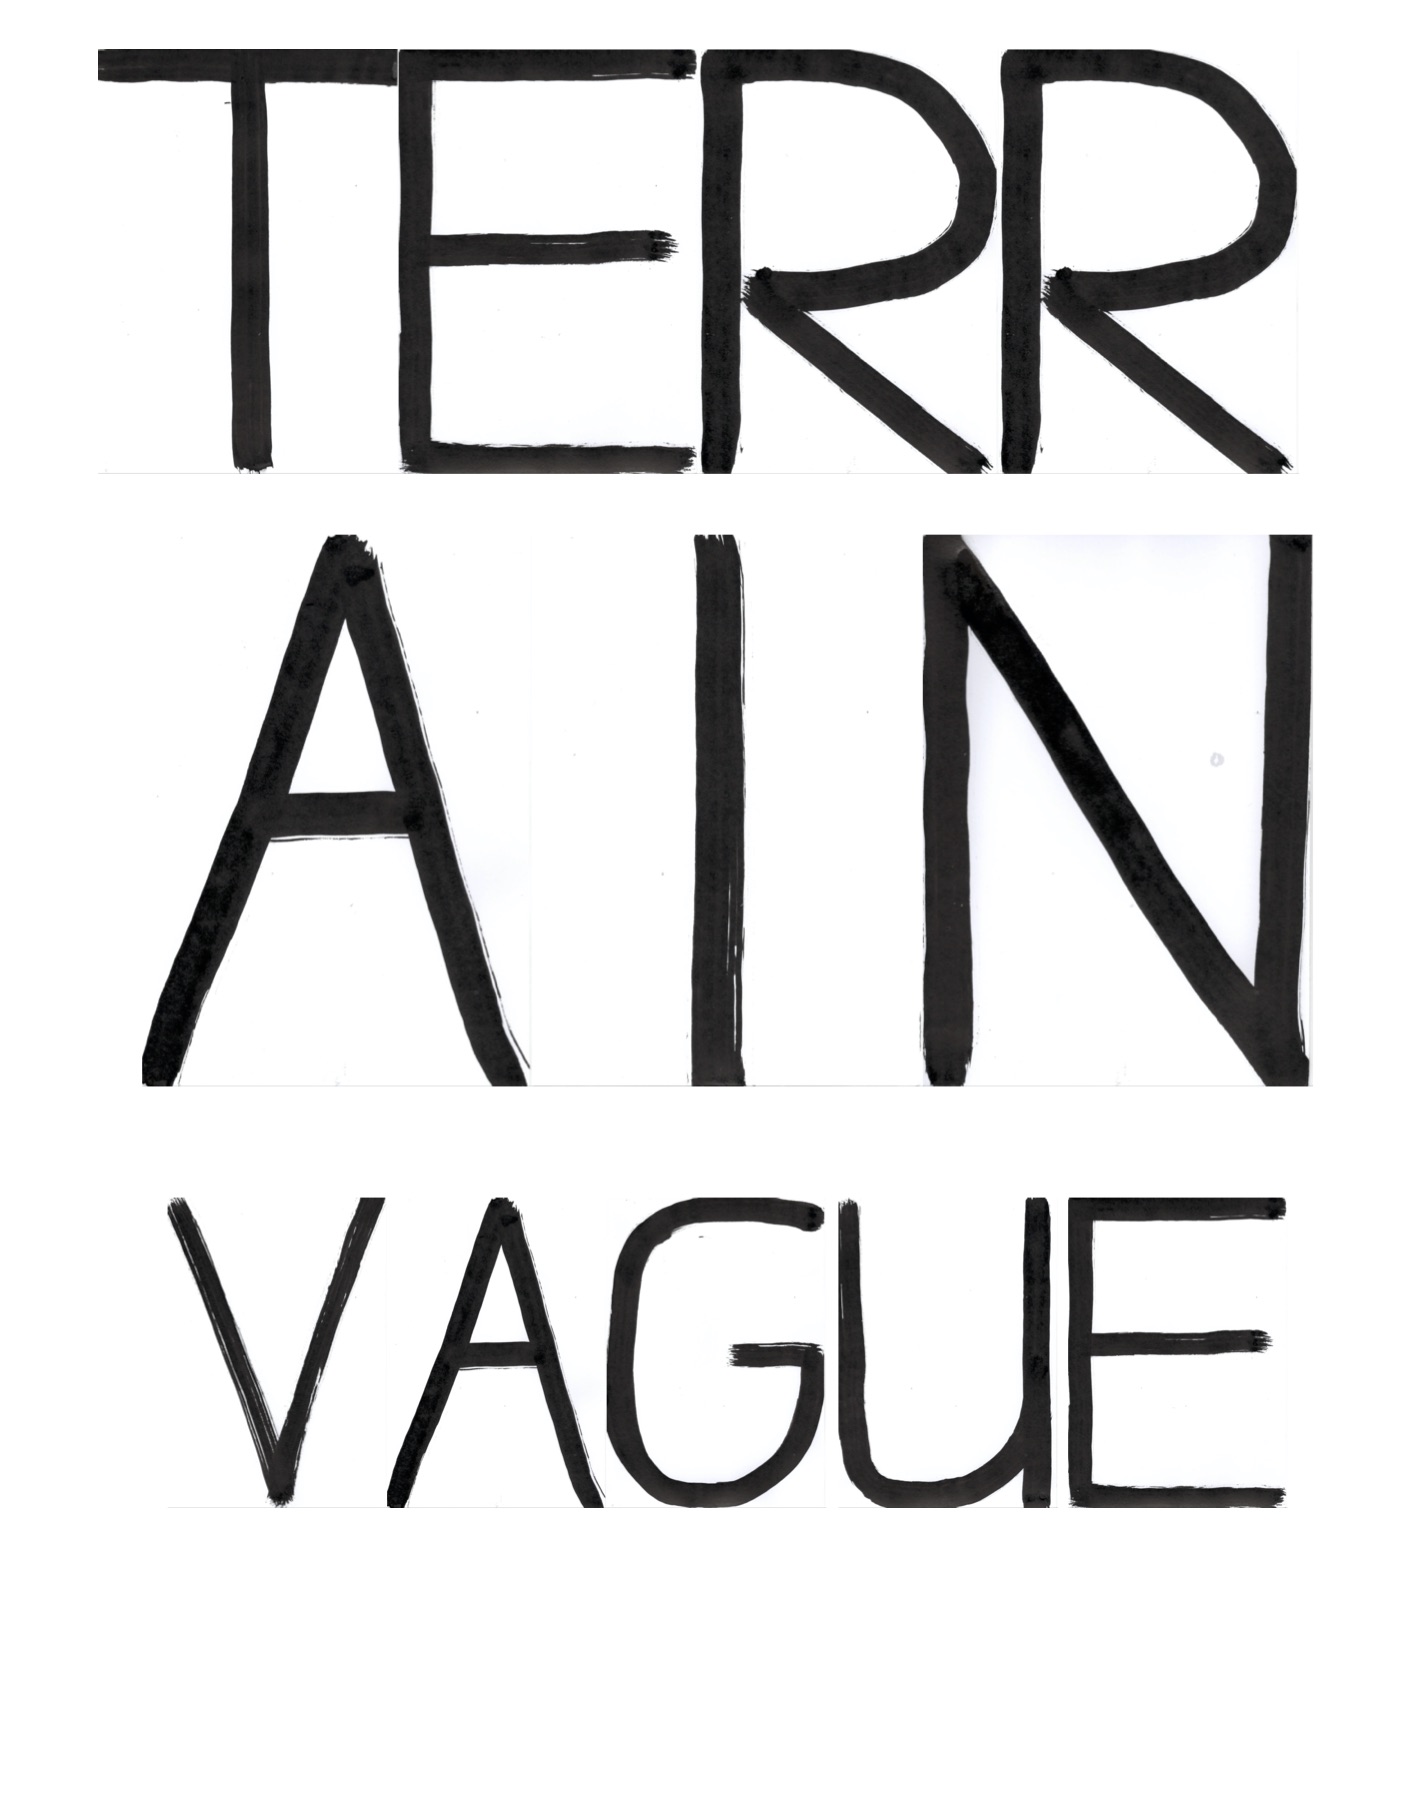 terrain_vague_seite1